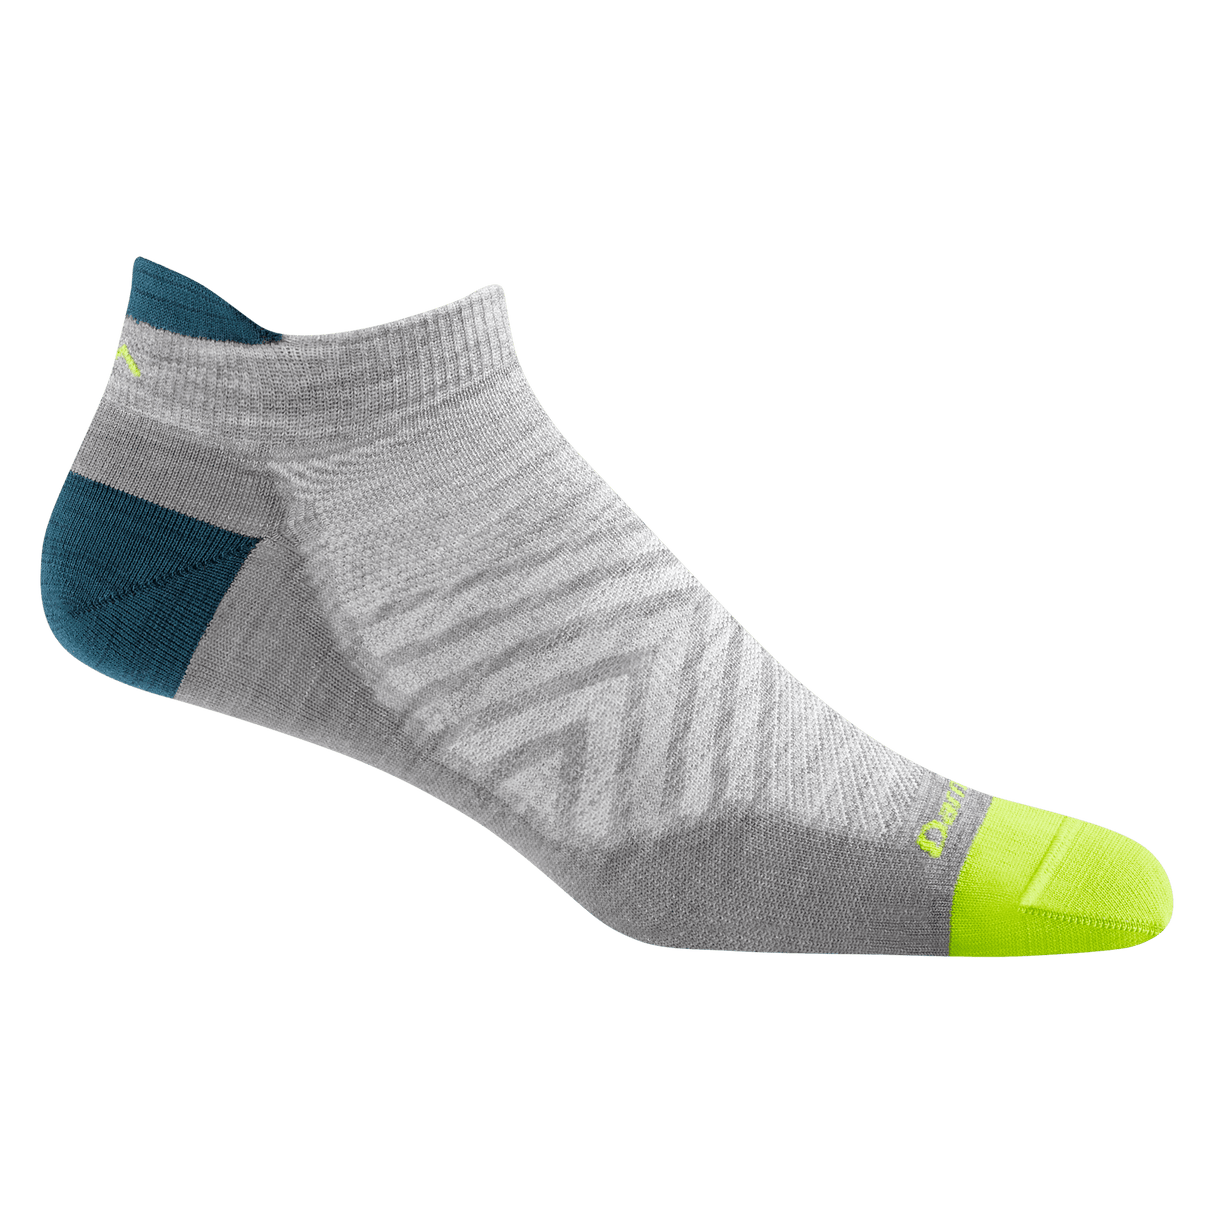 Darn Tough Mens Run No Show Tab Ultra-Lightweight Running Socks  -  Medium / Gray